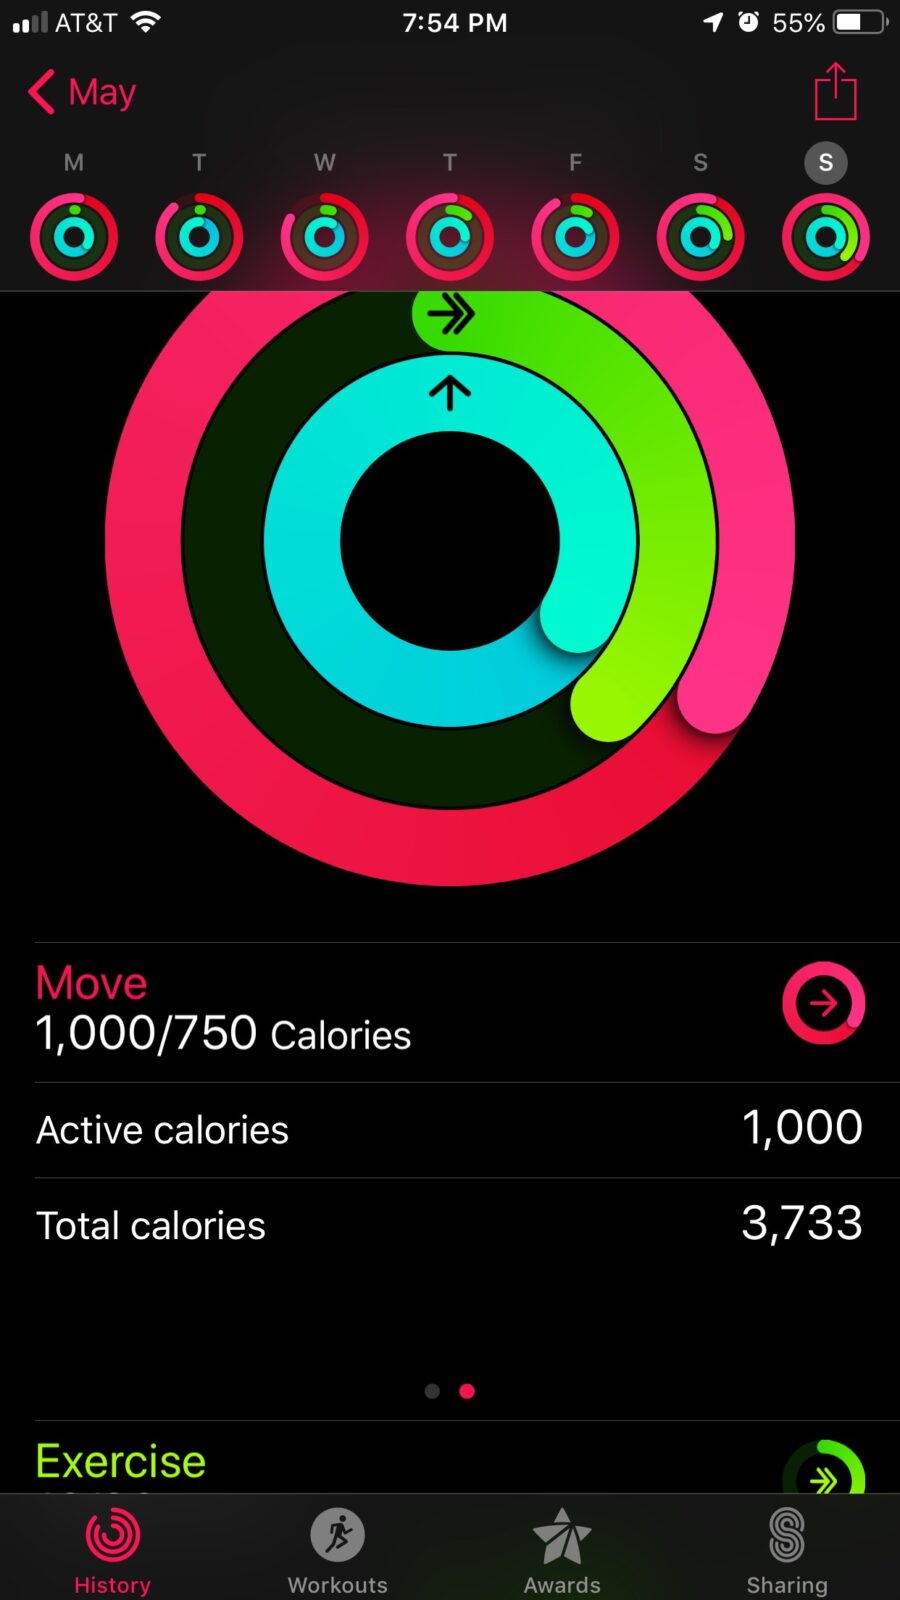 Кольца активности в Apple Watch также отображают ваши активные калории в движении